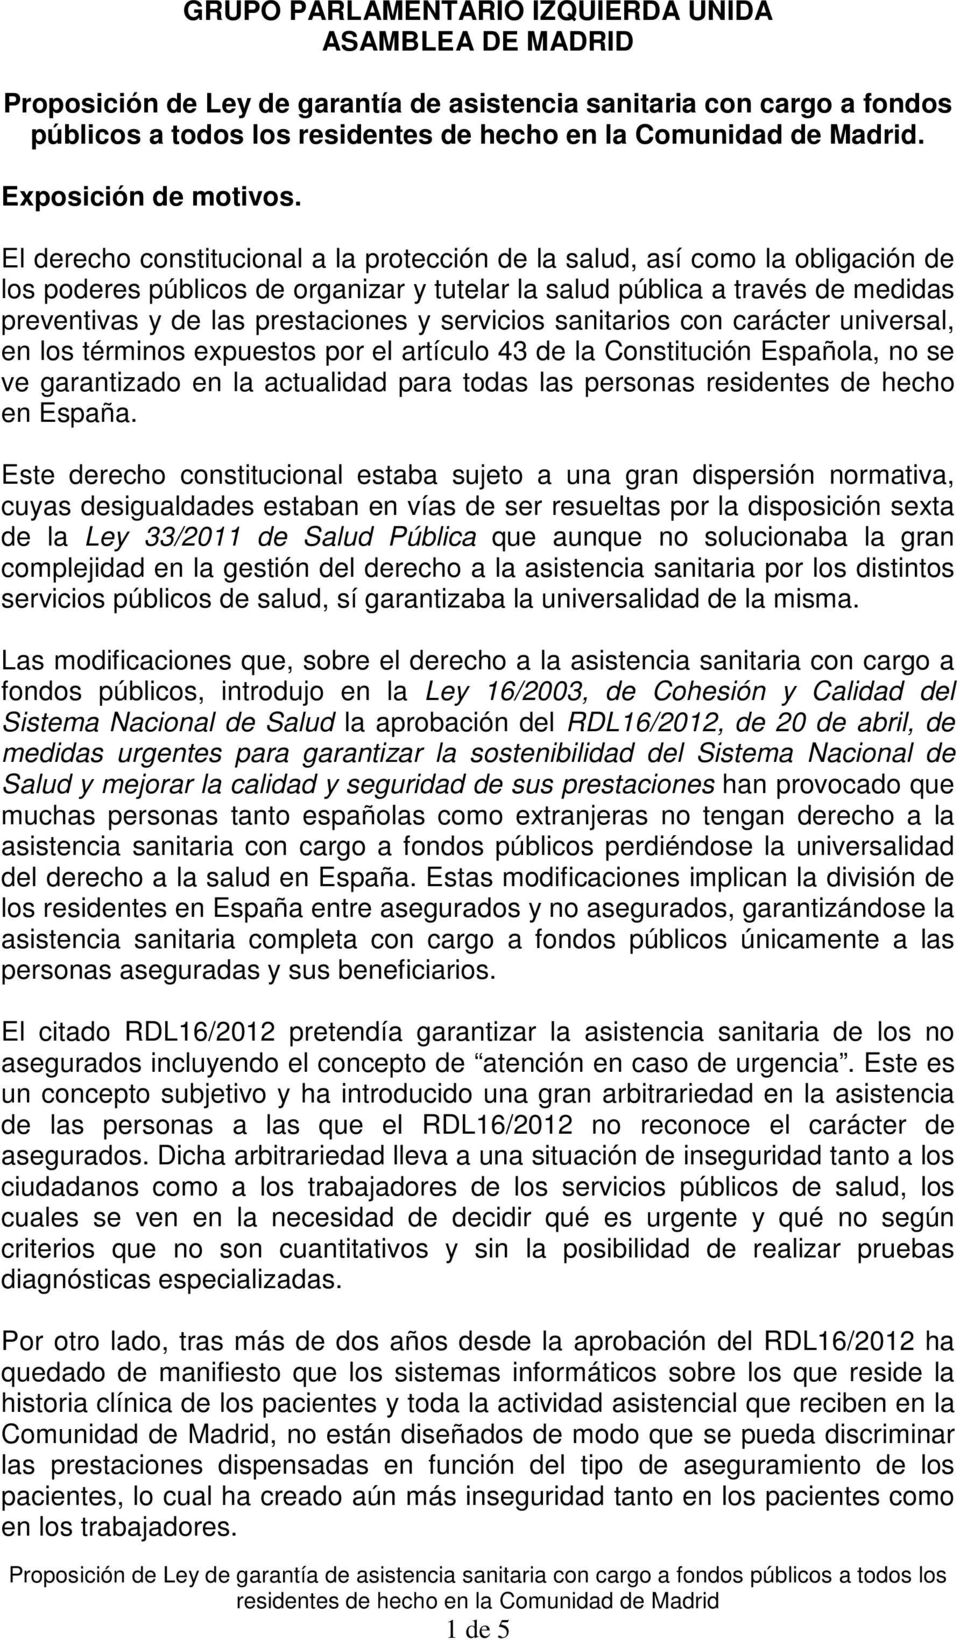 servicios sanitarios con carácter universal, en los términos expuestos por el artículo 43 de la Constitución Española, no se ve garantizado en la actualidad para todas las personas residentes de